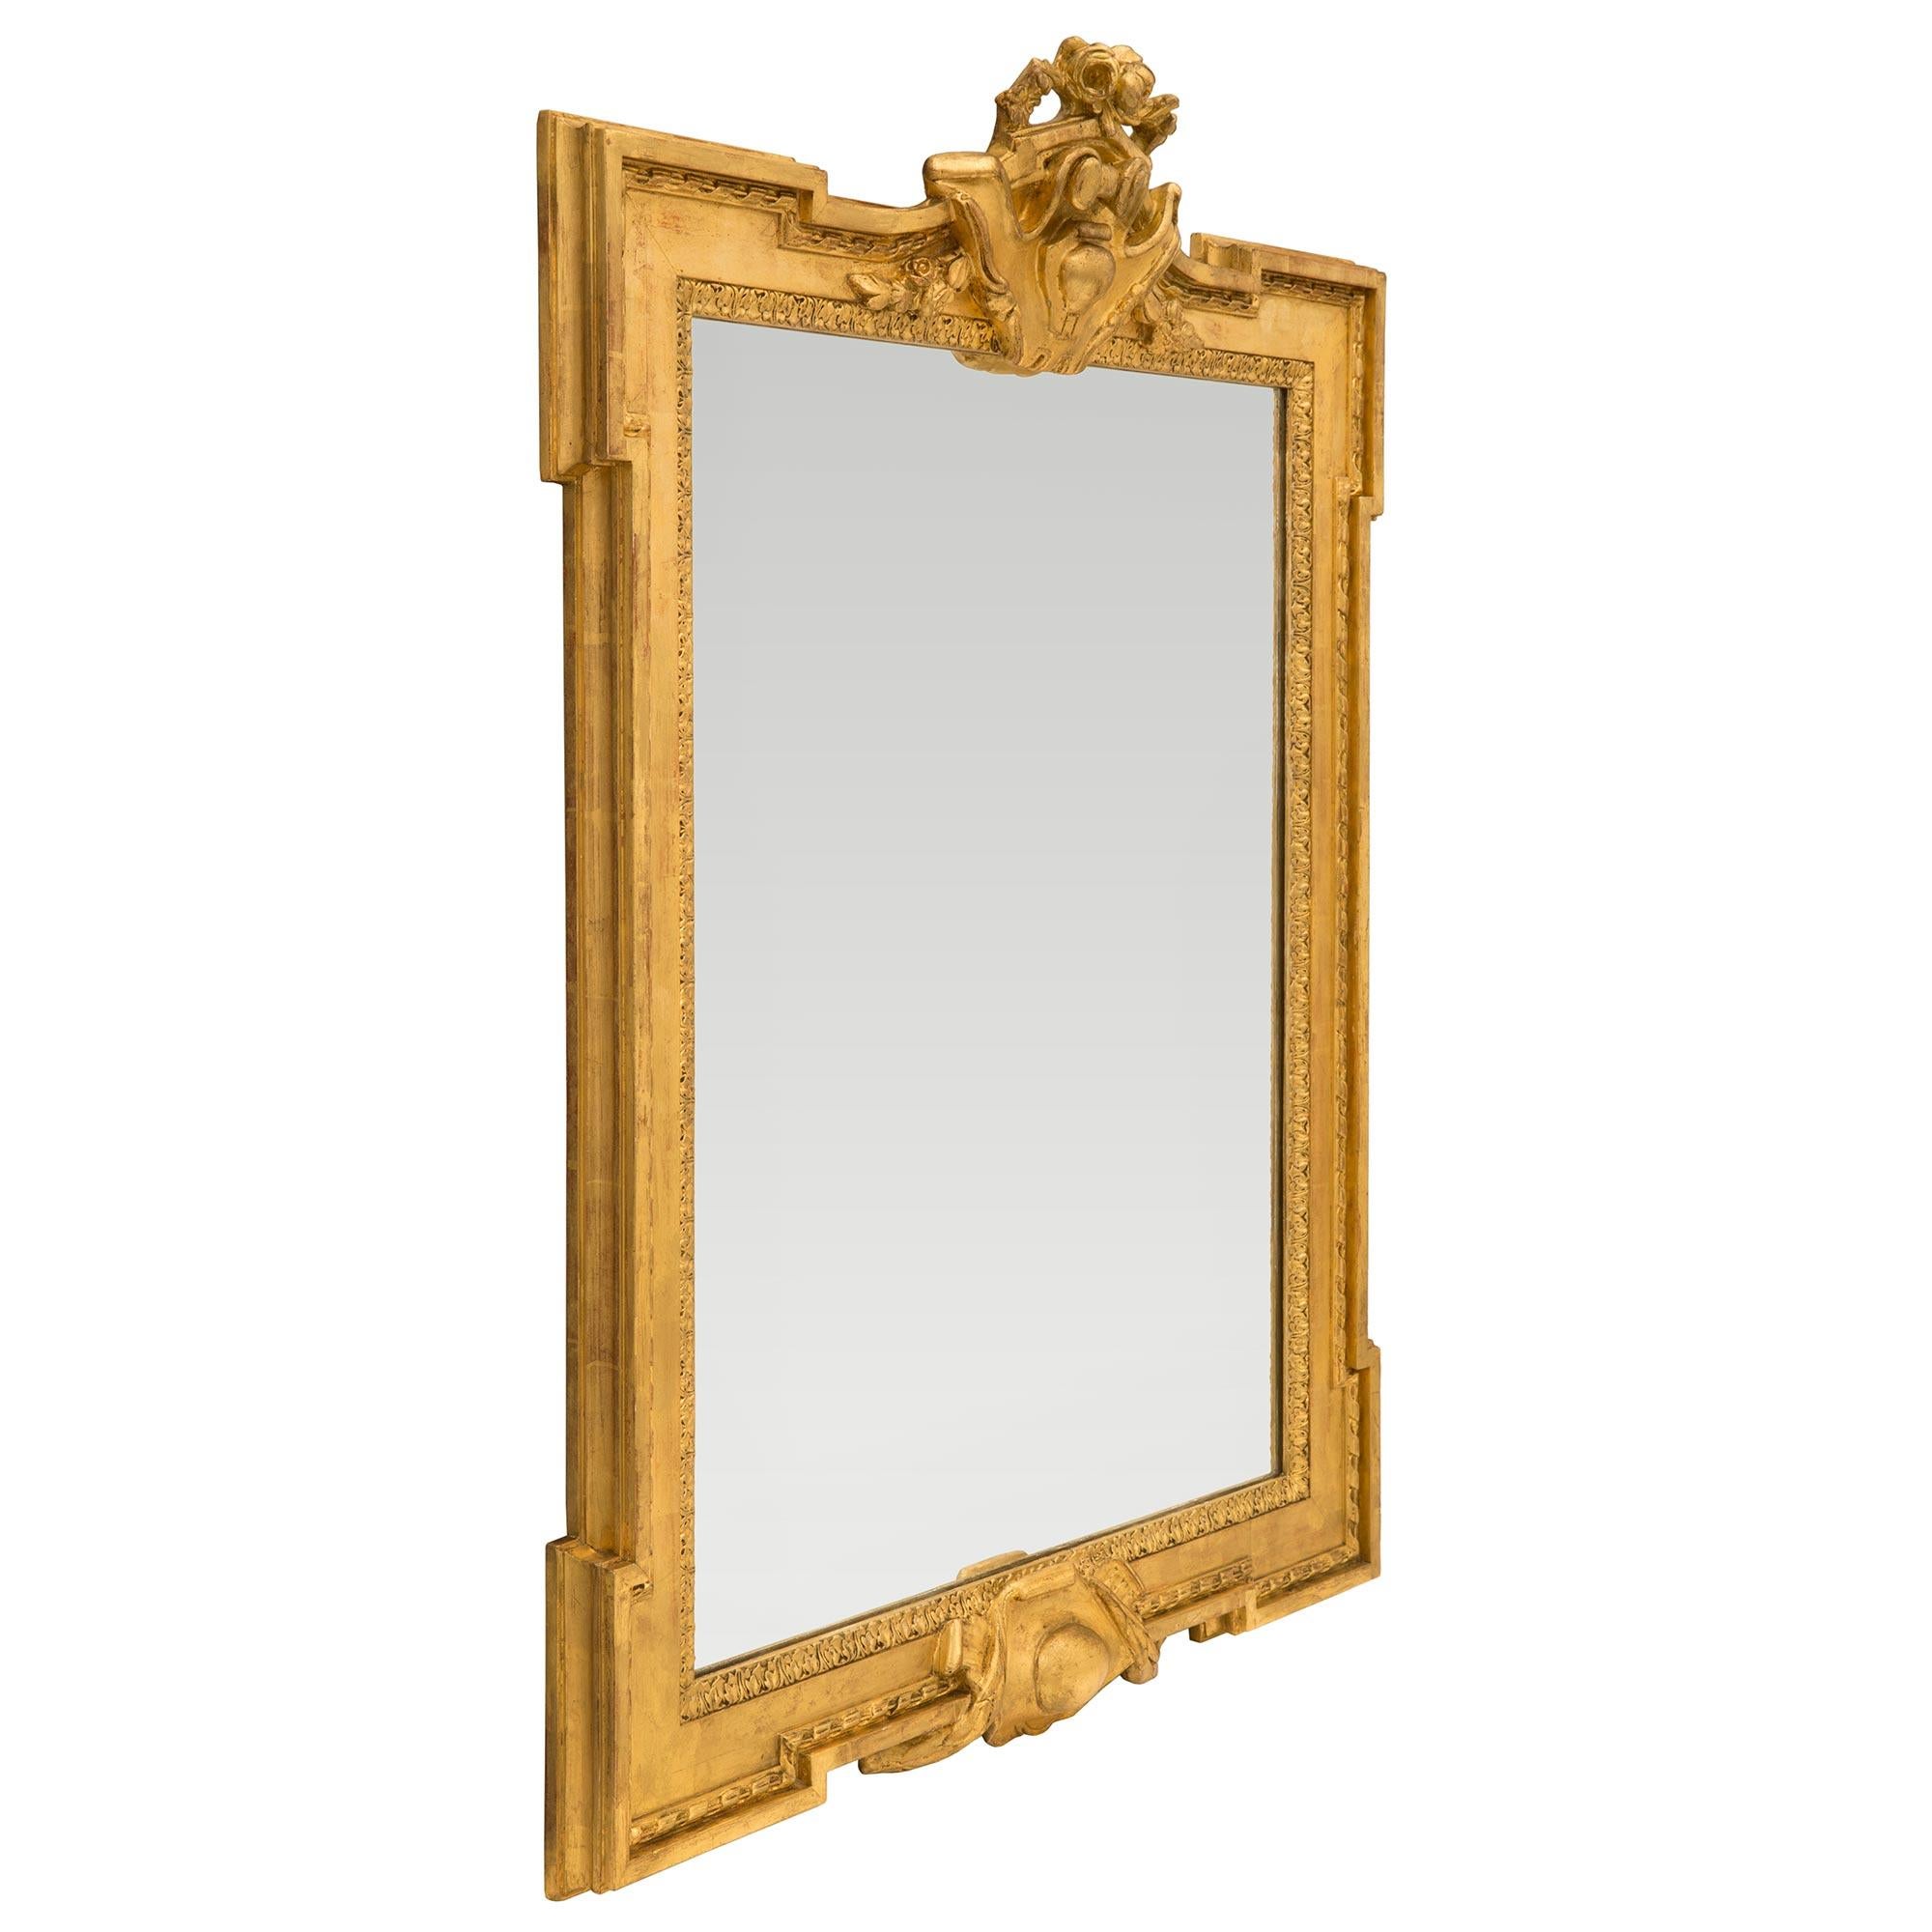 Eine schöne Französisch 19. Jahrhundert Louis XVI st. Vergoldung Spiegel. Der Spiegel behält seine ursprüngliche Spiegelplatte in einem architektonischen und höchst dekorativen gesprenkelten Rahmen mit einer fein geschnitzten Blattbordüre und einem